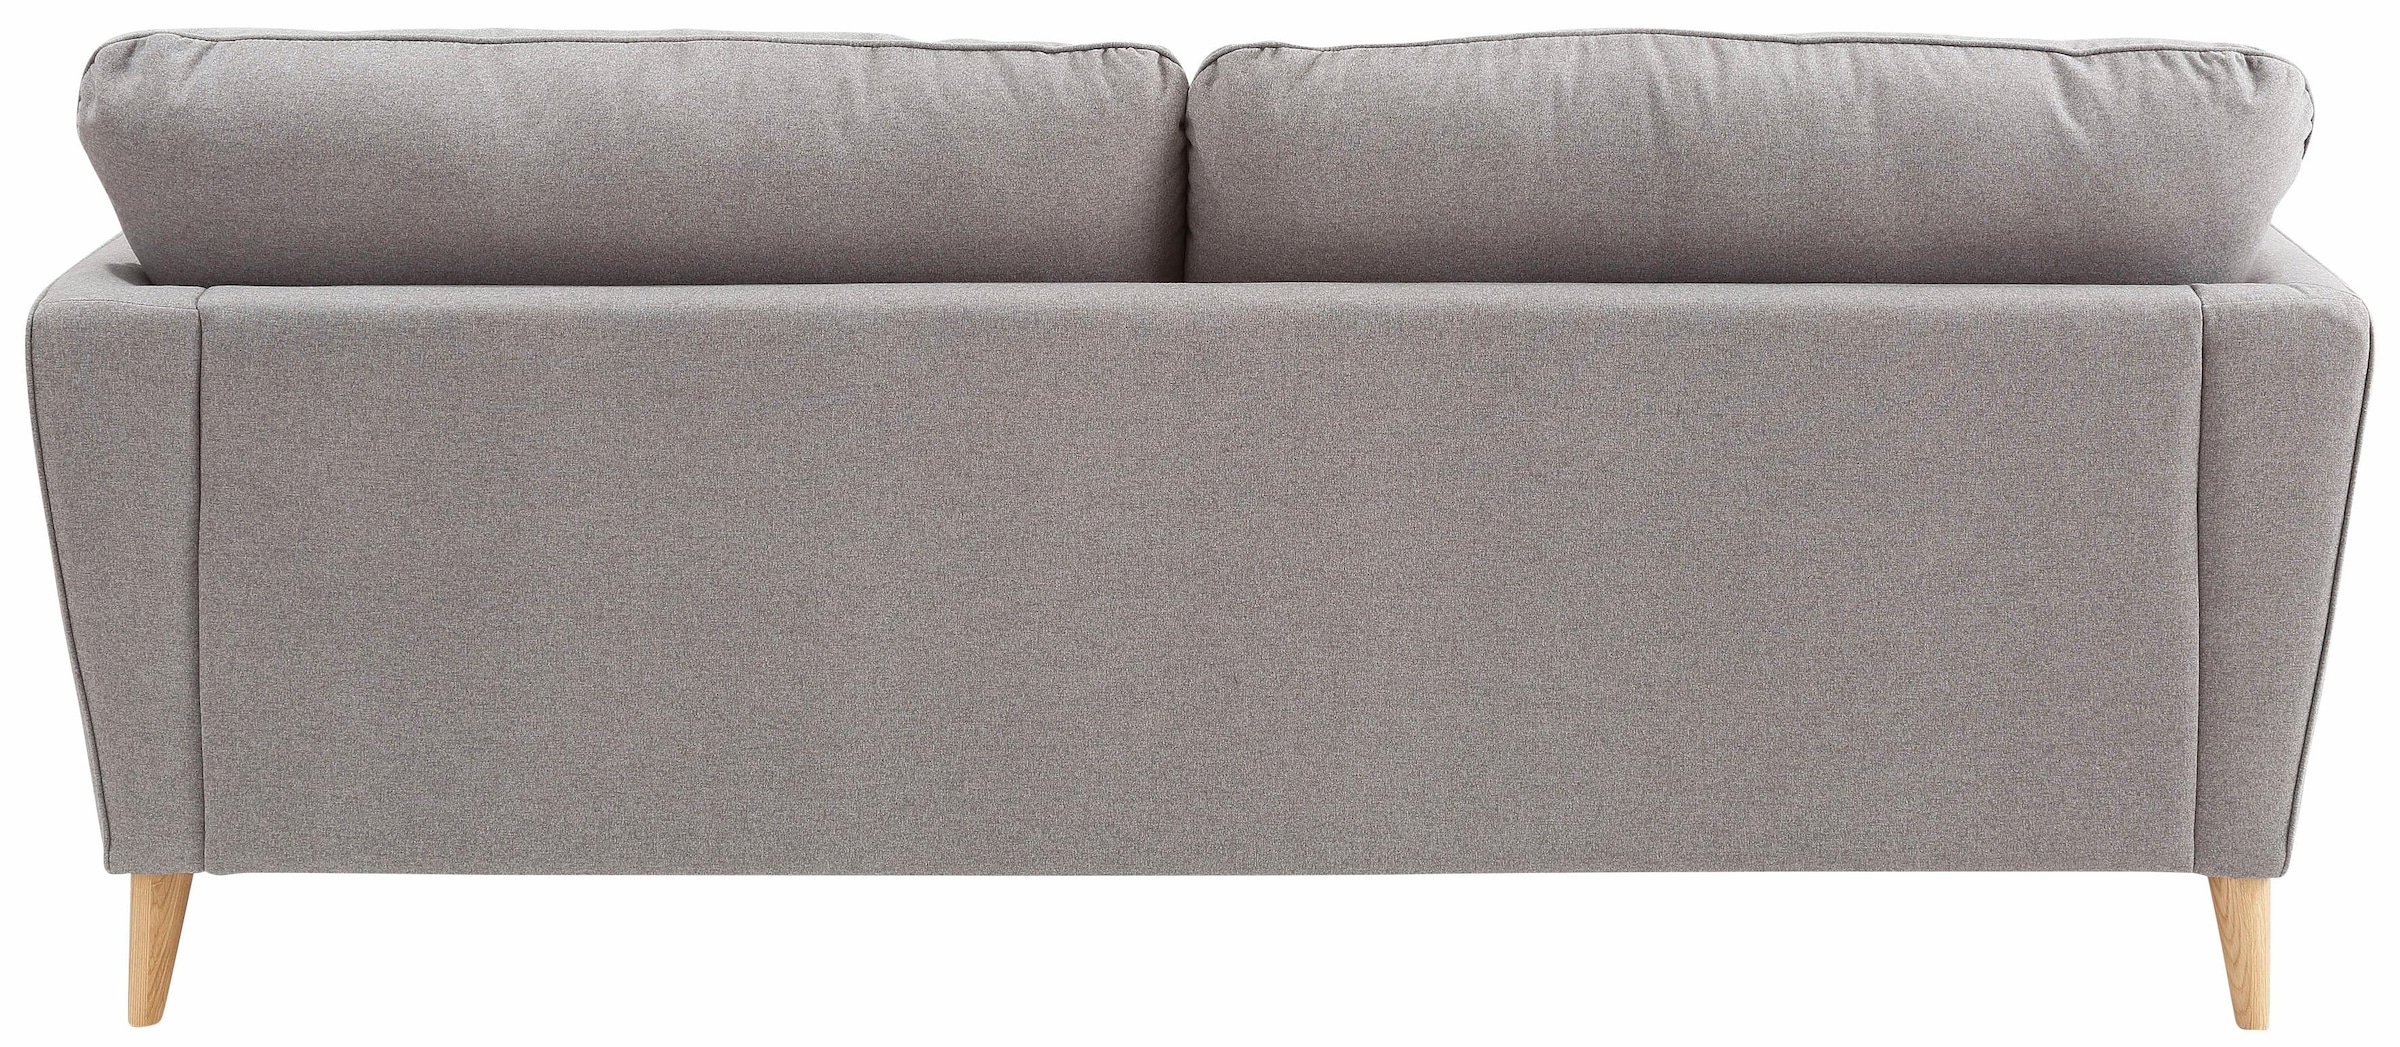 Home affaire 3-Sitzer »MARSEILLE Sofa 206 cm«, mit Massivholzbeinen aus Eiche, verschiedene Bezüge und Farbvarianten